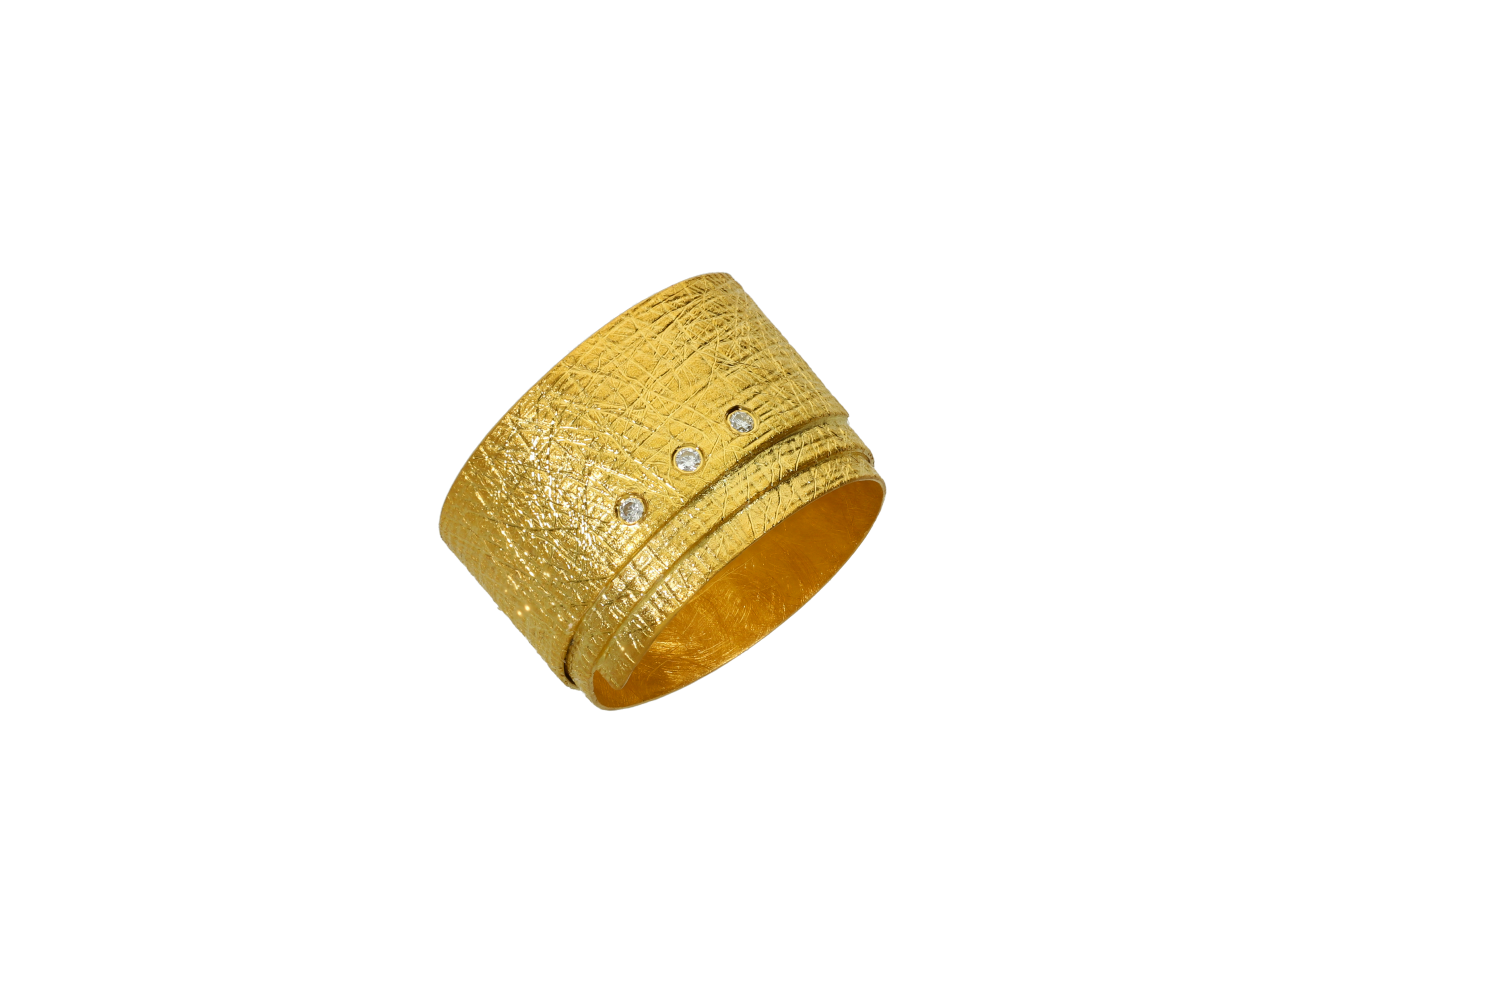 Δαχτυλίδι χειροποίητο σε χρυσό 18Κ με φαρδύ έλασμα ματ με γραμμώσεις που κάνει τρία γυρίσματα φέρει και τρία διαμάντια.